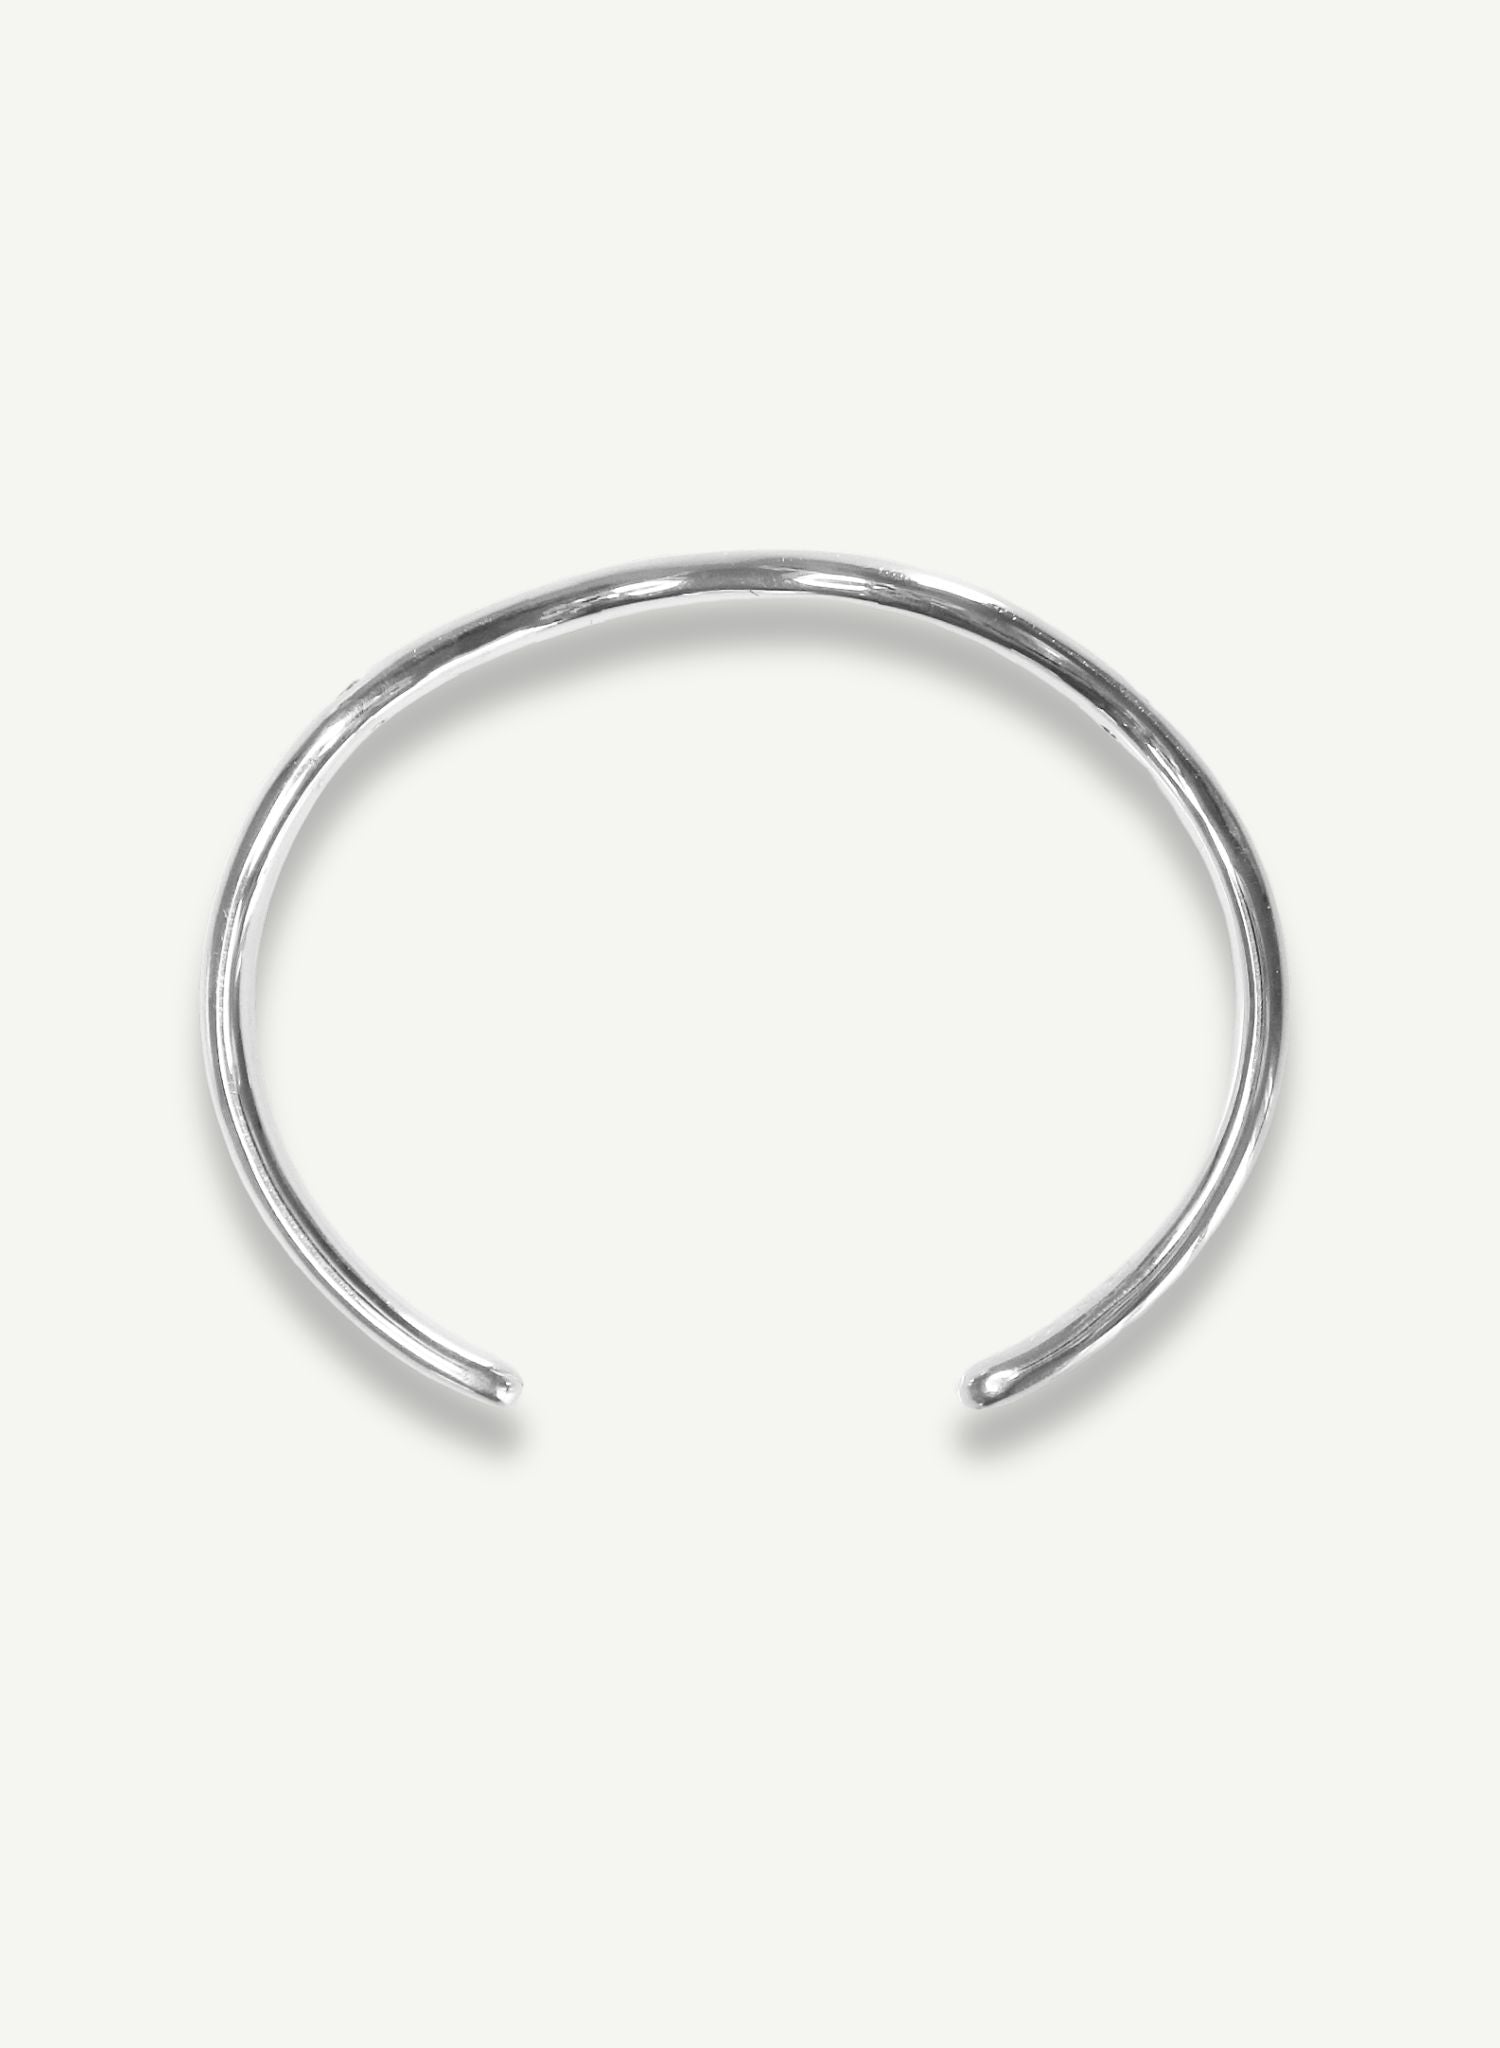 bracelet-universe-the-universe-has-your-back-argent-bijou-femme-madeinfrance-fait-en-france-Bento-jewelry